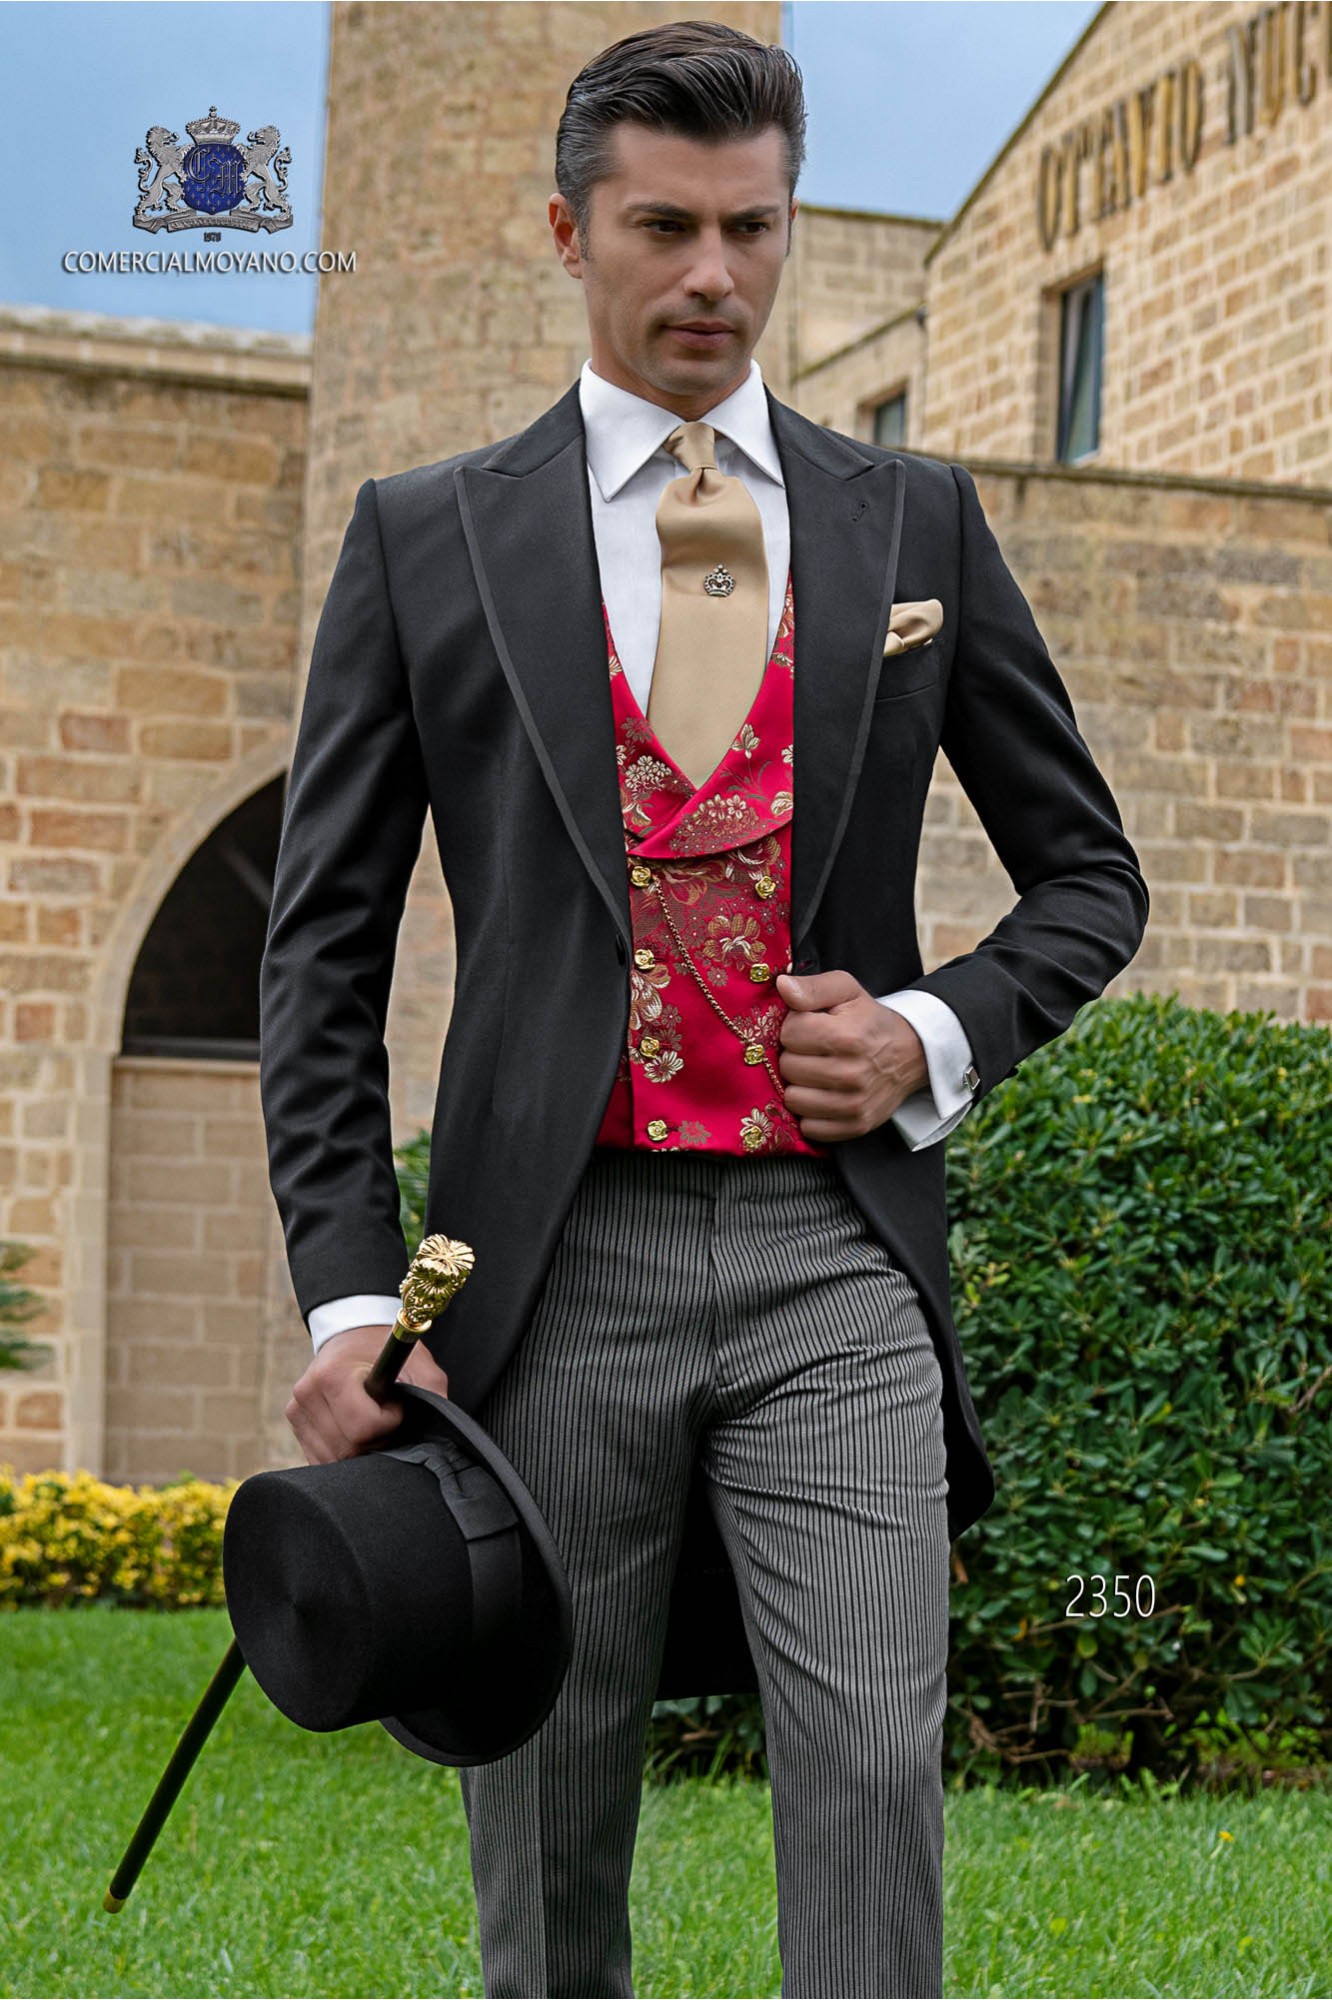 Chaqué de novio negro tejido lana con pantalón raya diplomática modelo: 2350 Mario Moyano colección Gentleman